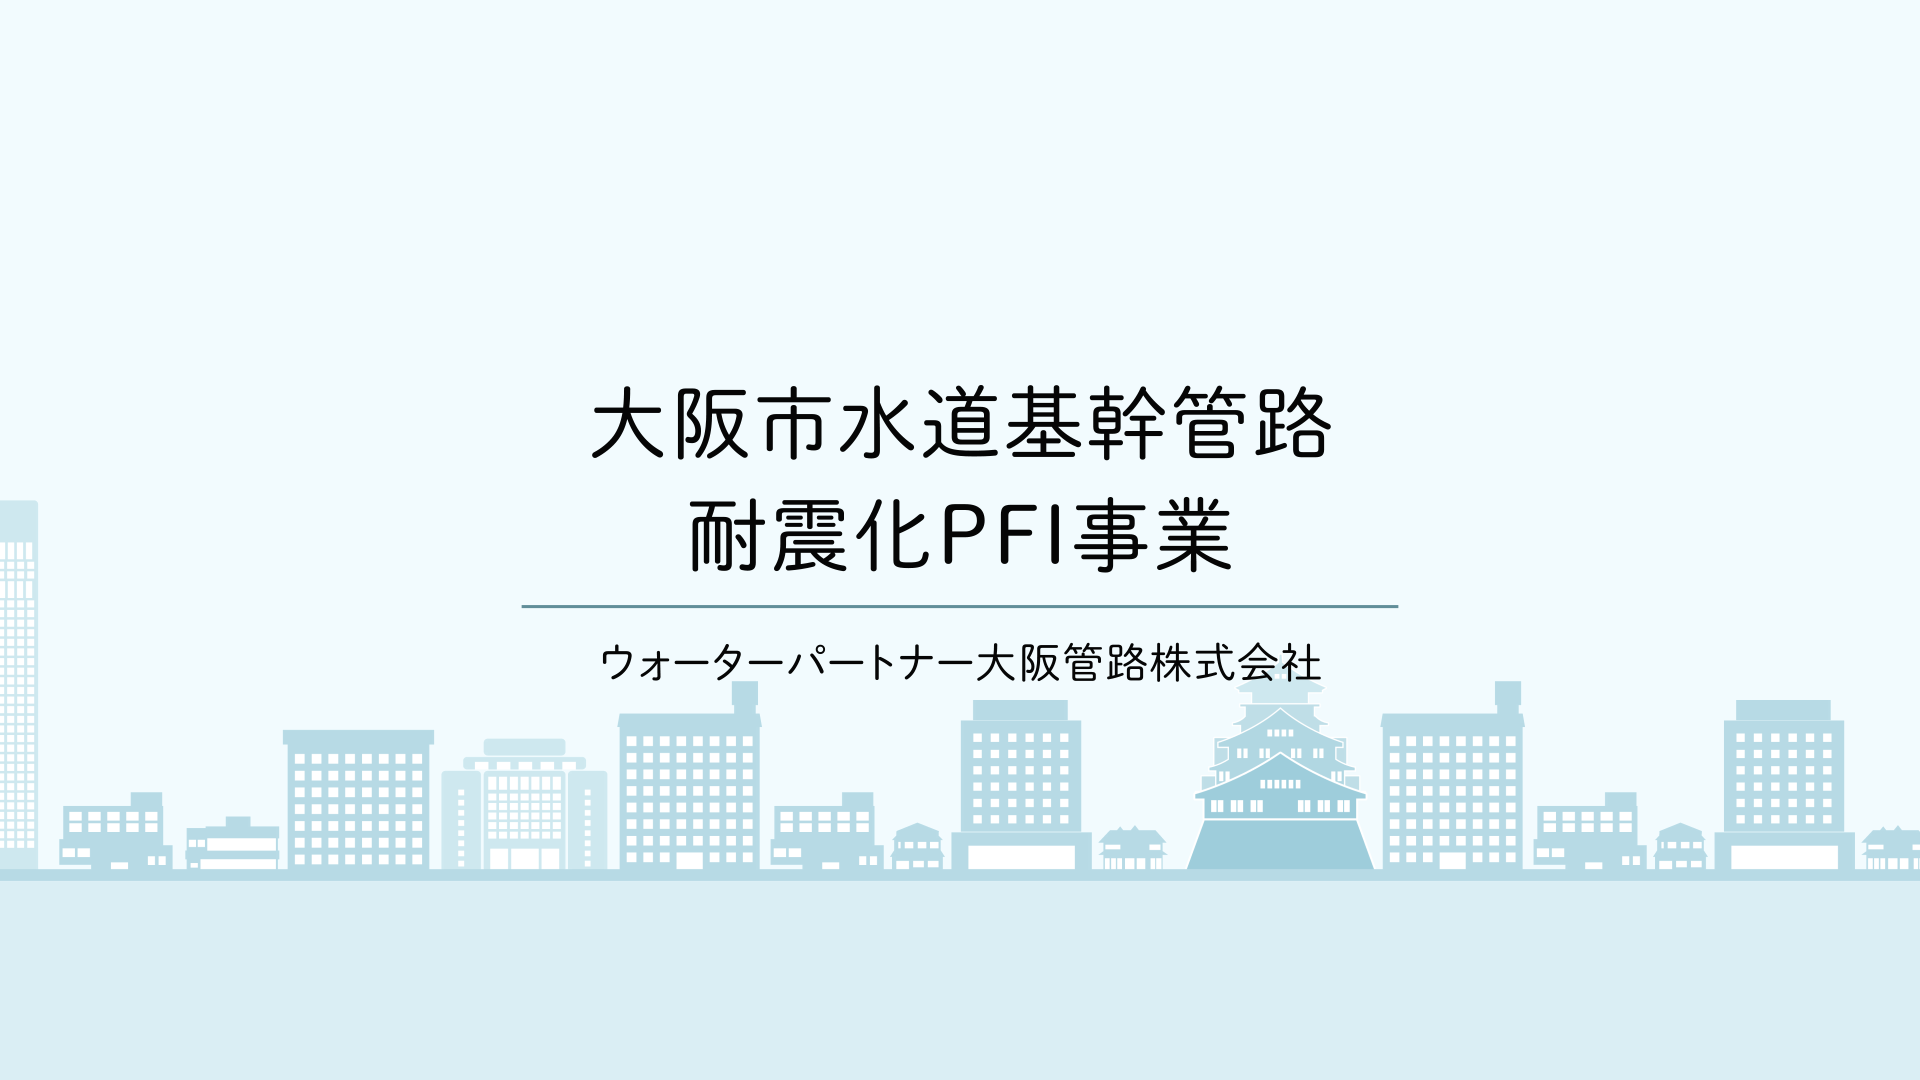 大阪市水道基幹管路耐震化PFI事業の説明動画はこちら